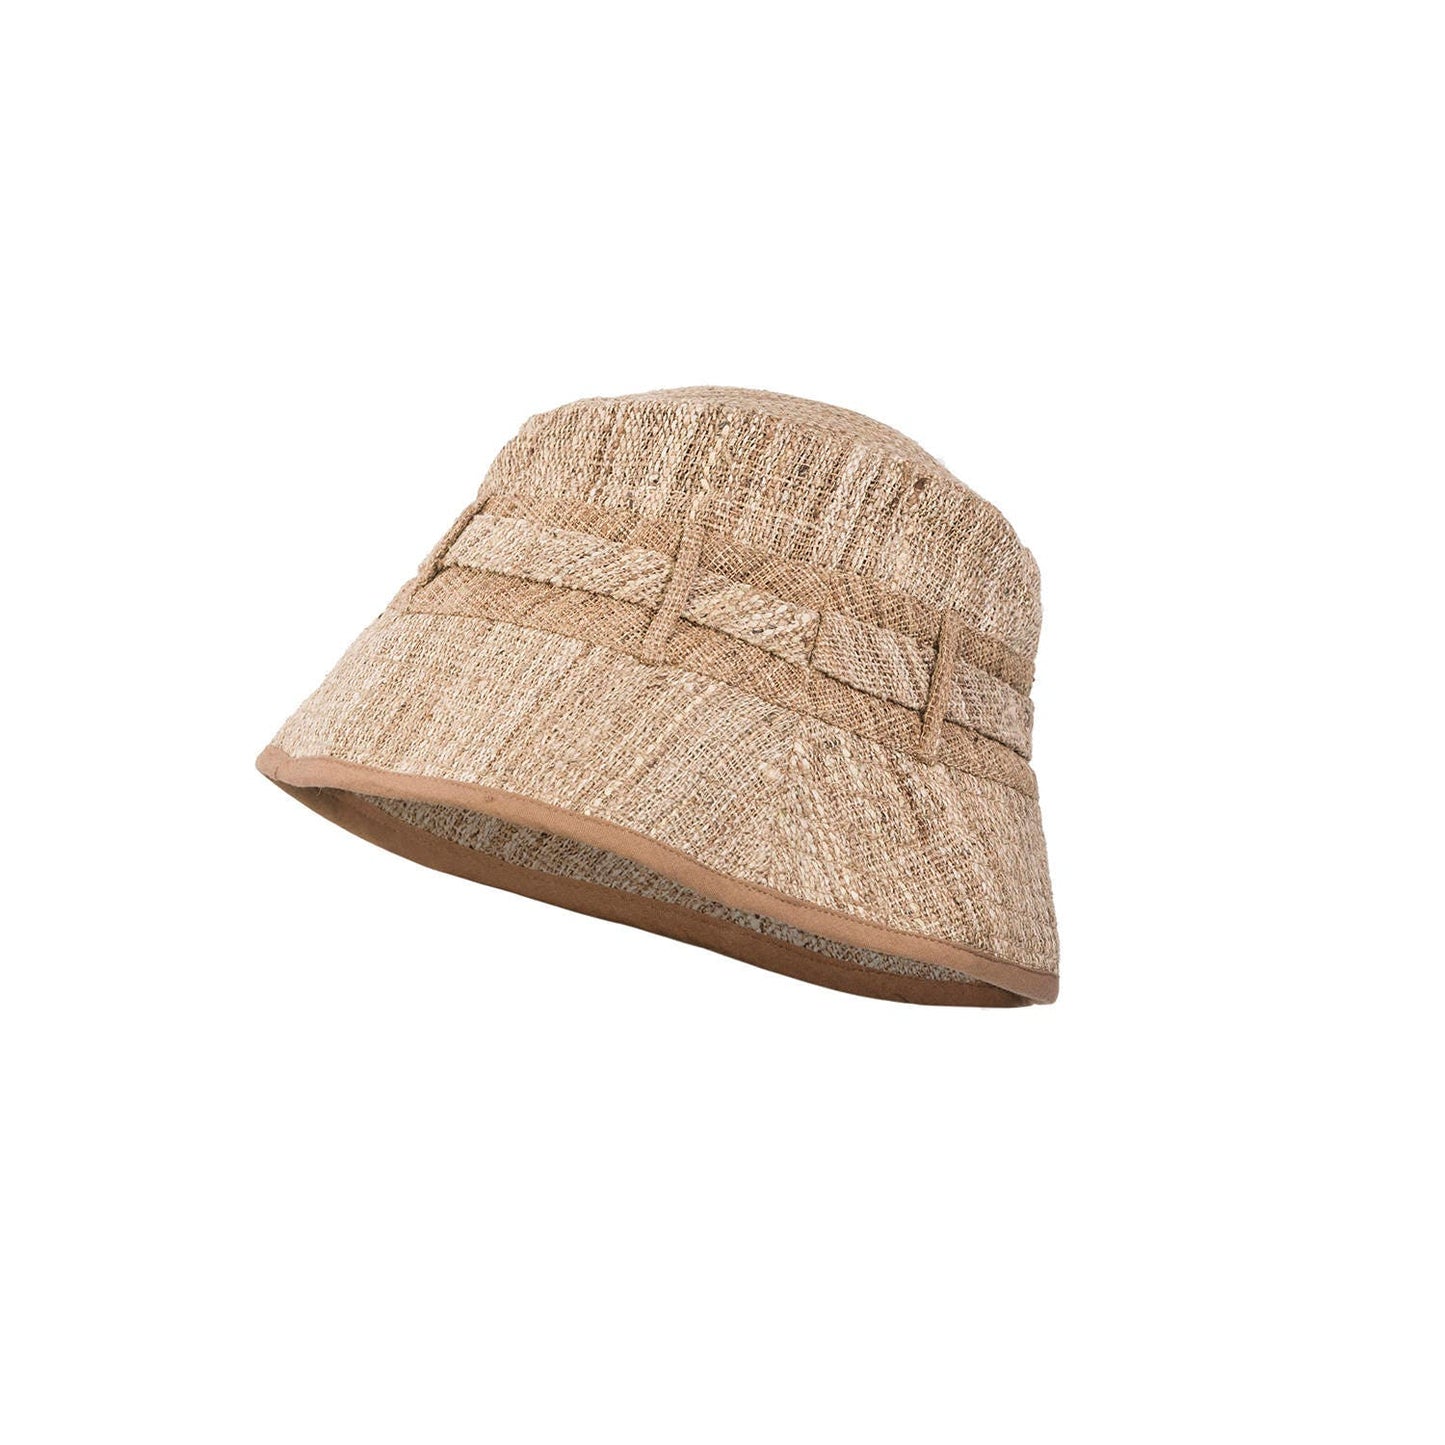 Wild Nettle Bucket Hat - Unisex - Summer hat